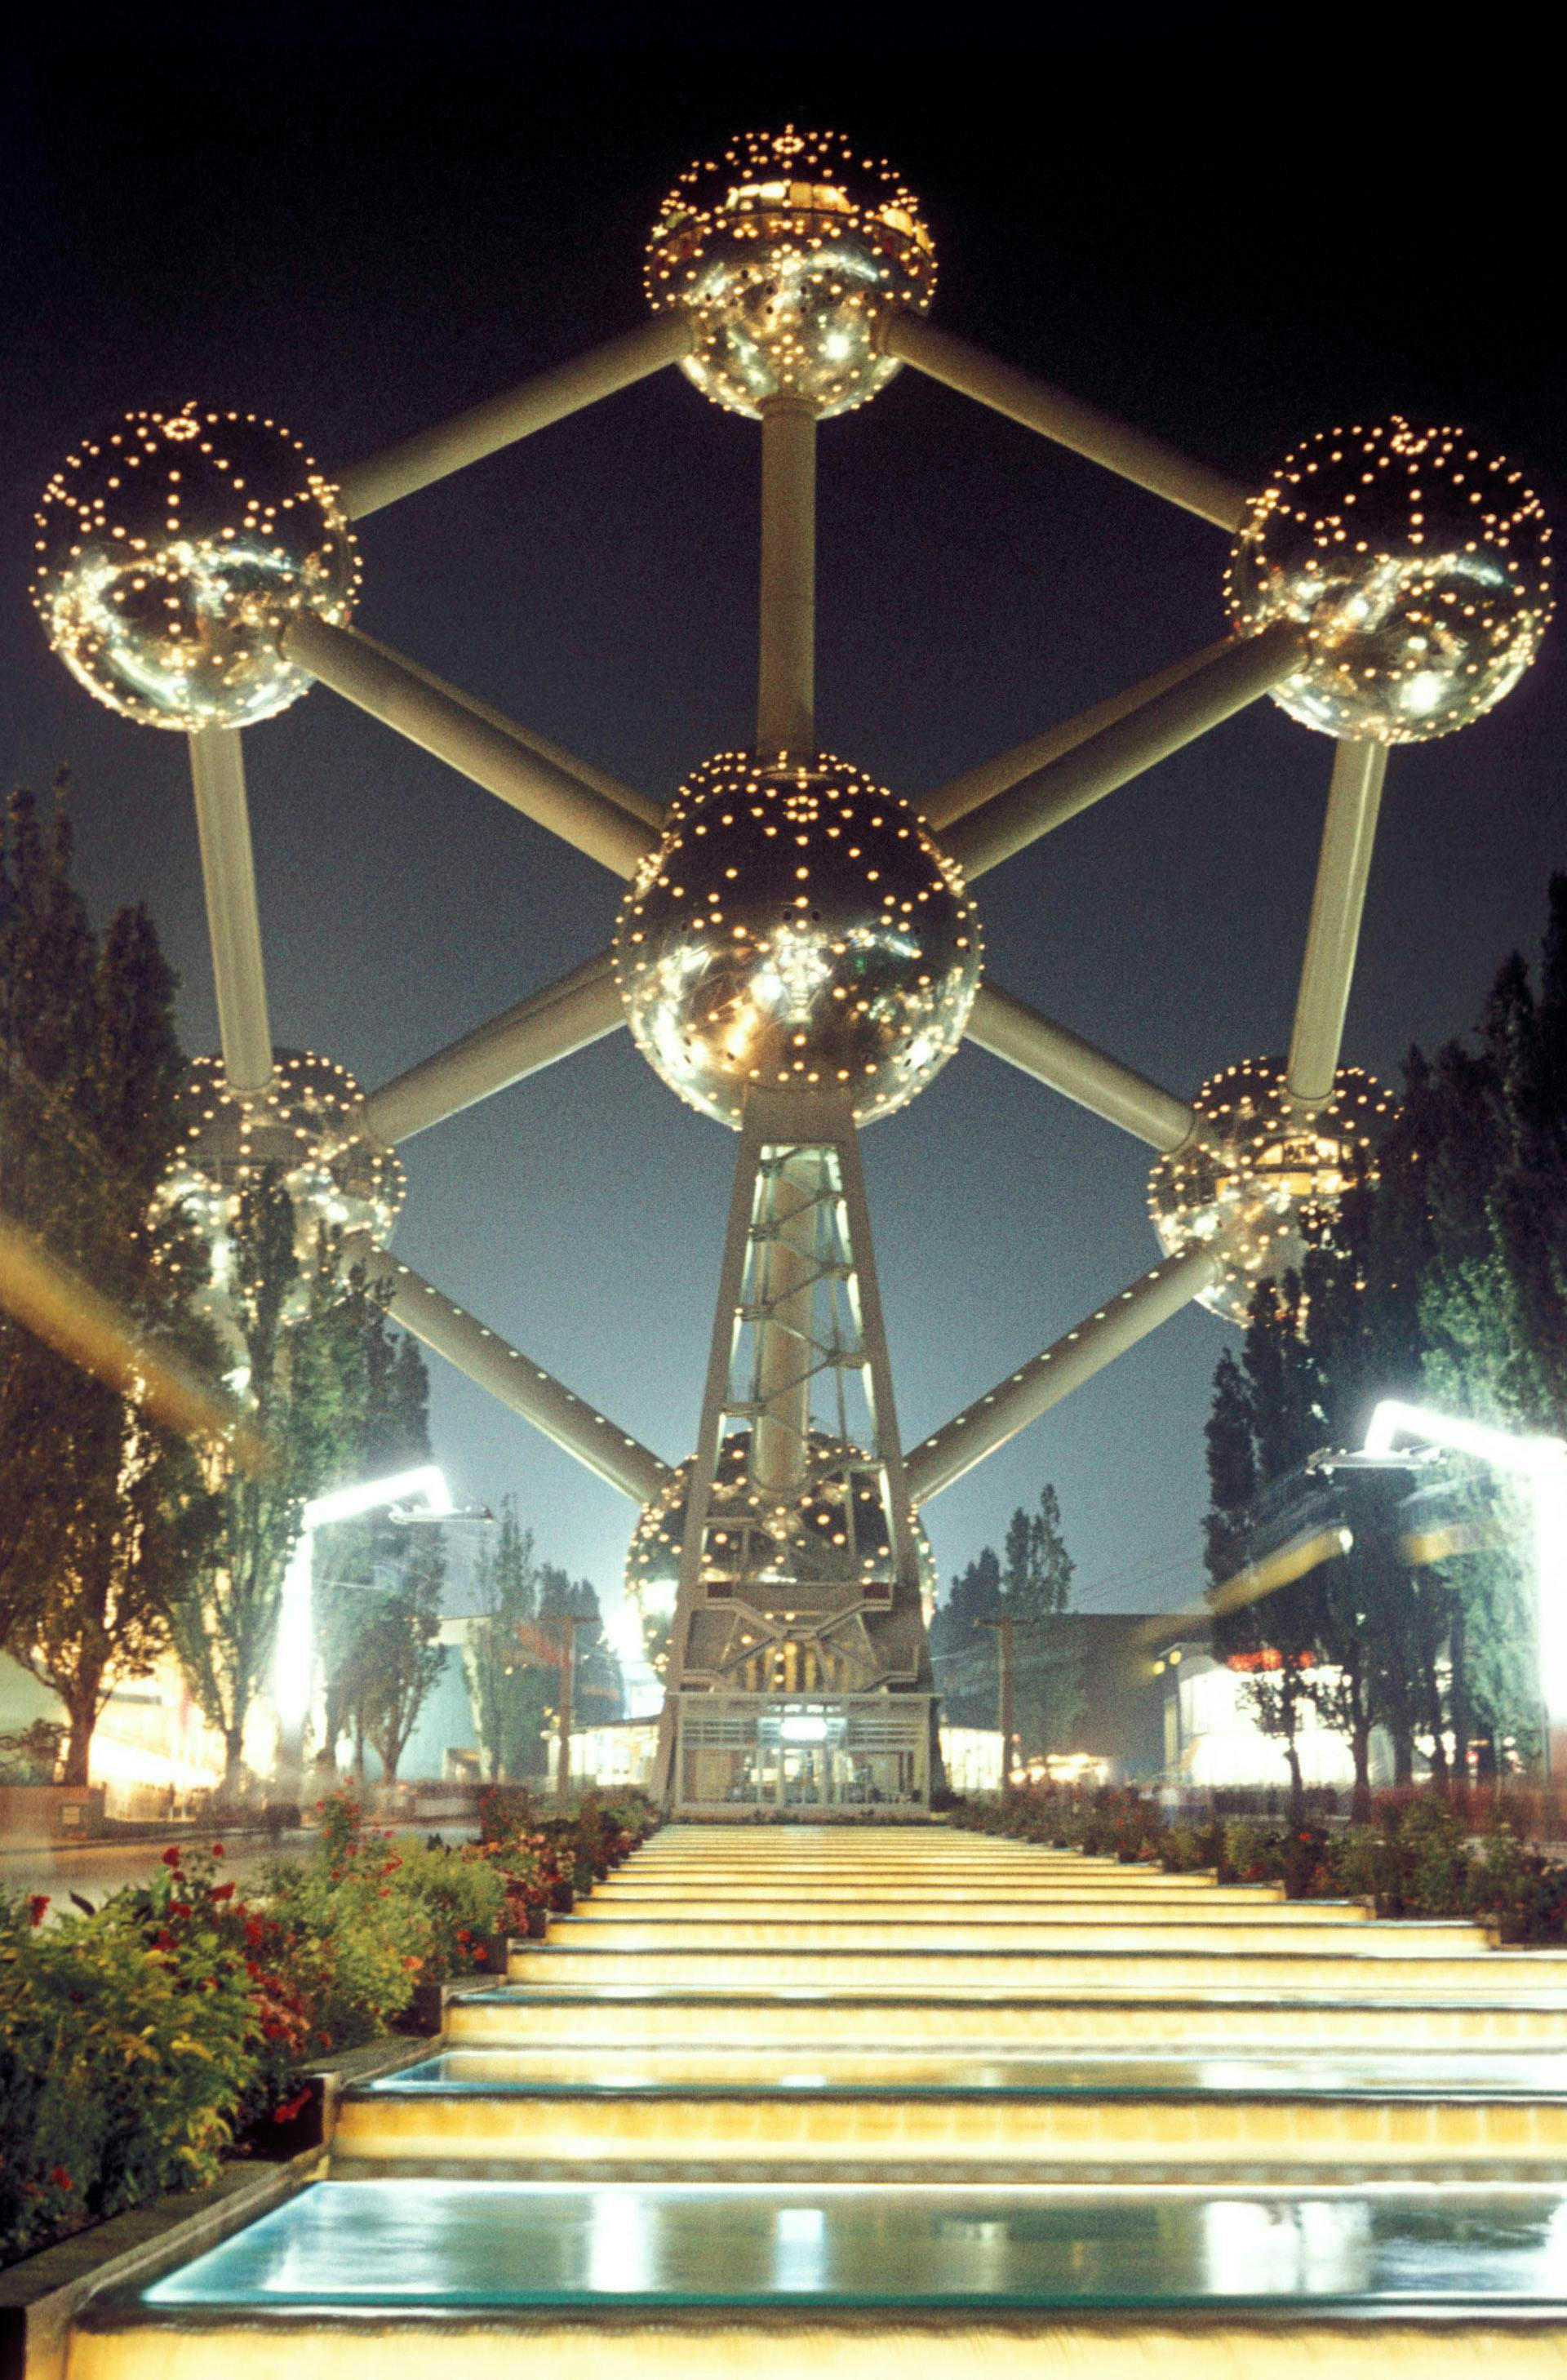 bruxelles,landmark,lighting,strange,unusual,a050-00041,25,11,241 chandelier lamp lighting